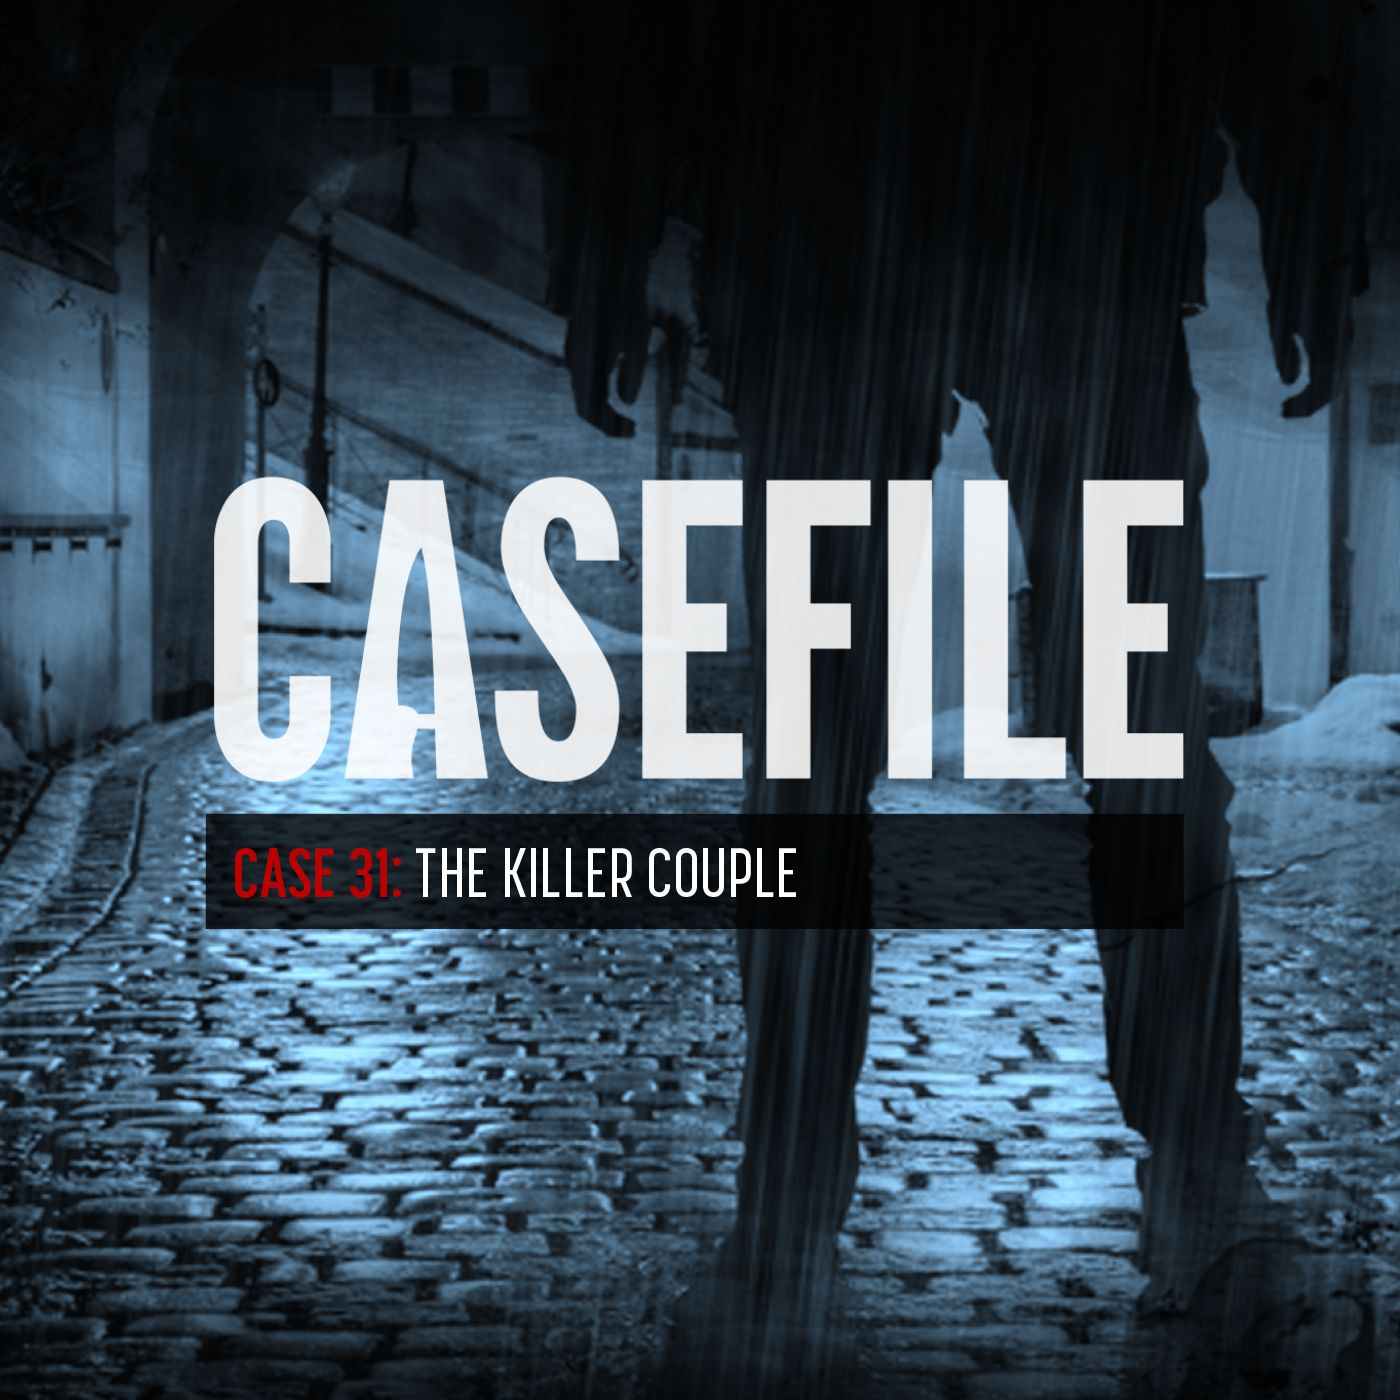 Case 31: The Killer Couple